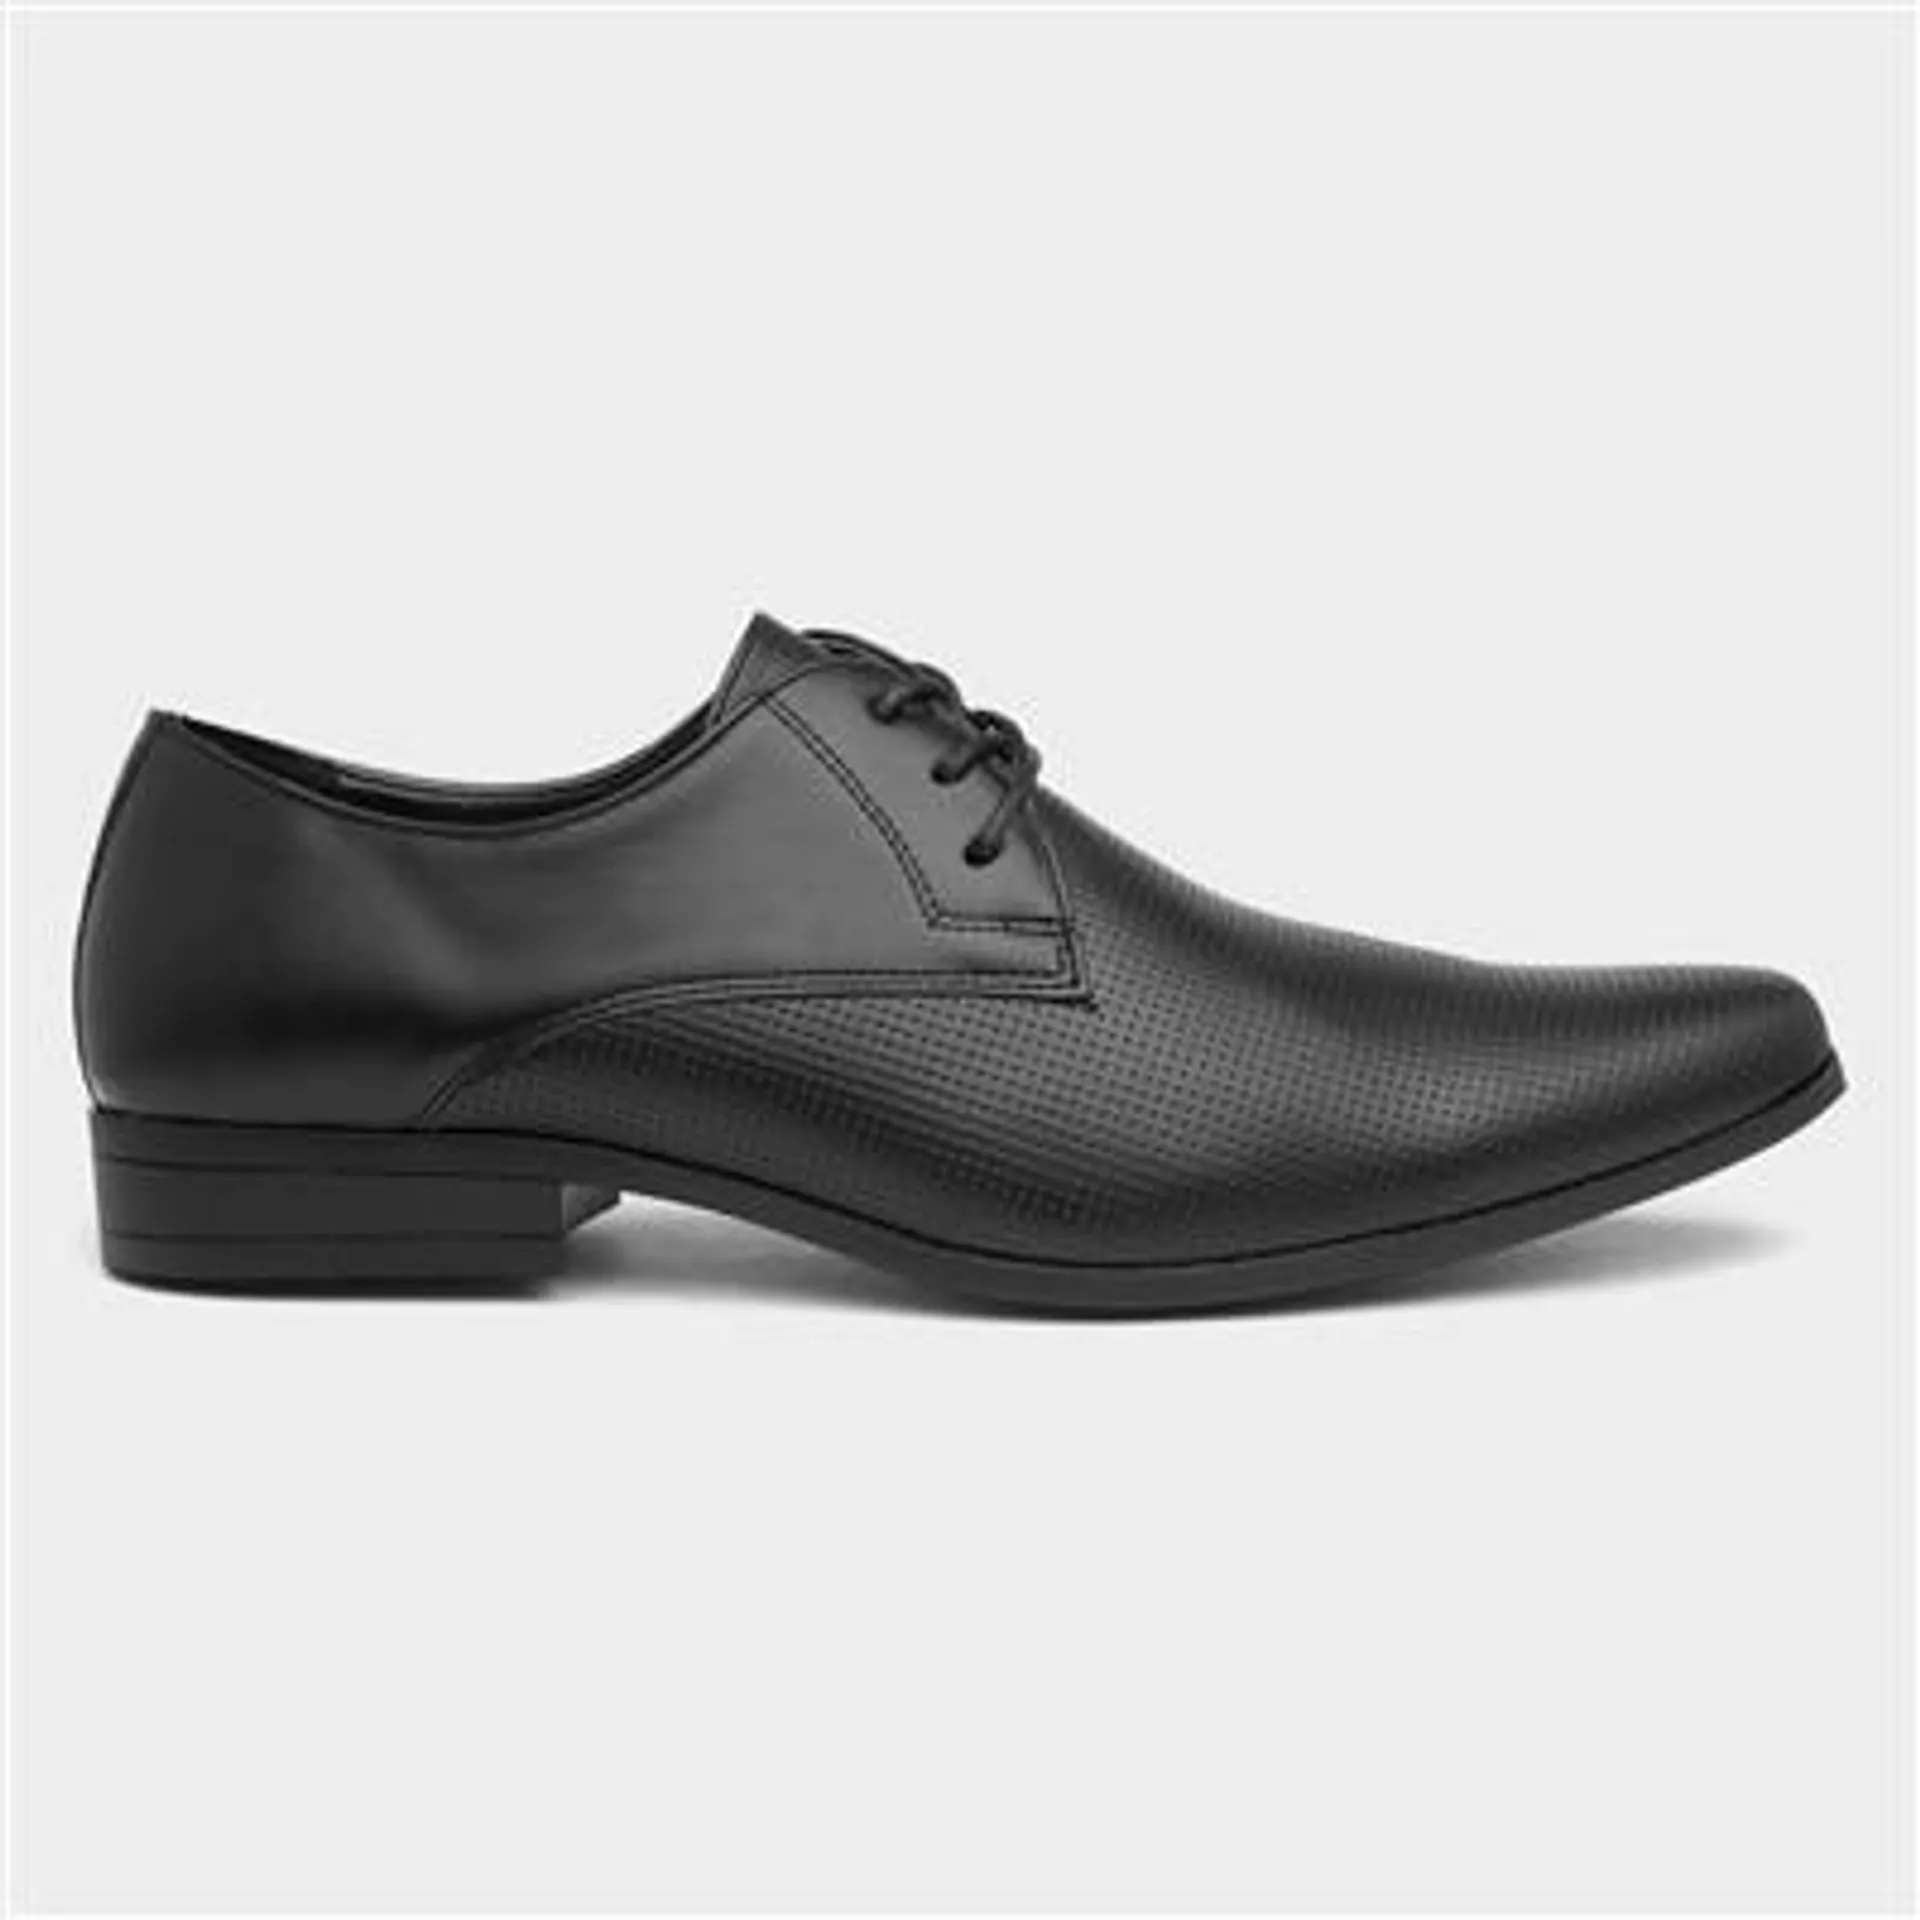 Bruno Lace Up Mens Formal Shoe in Black